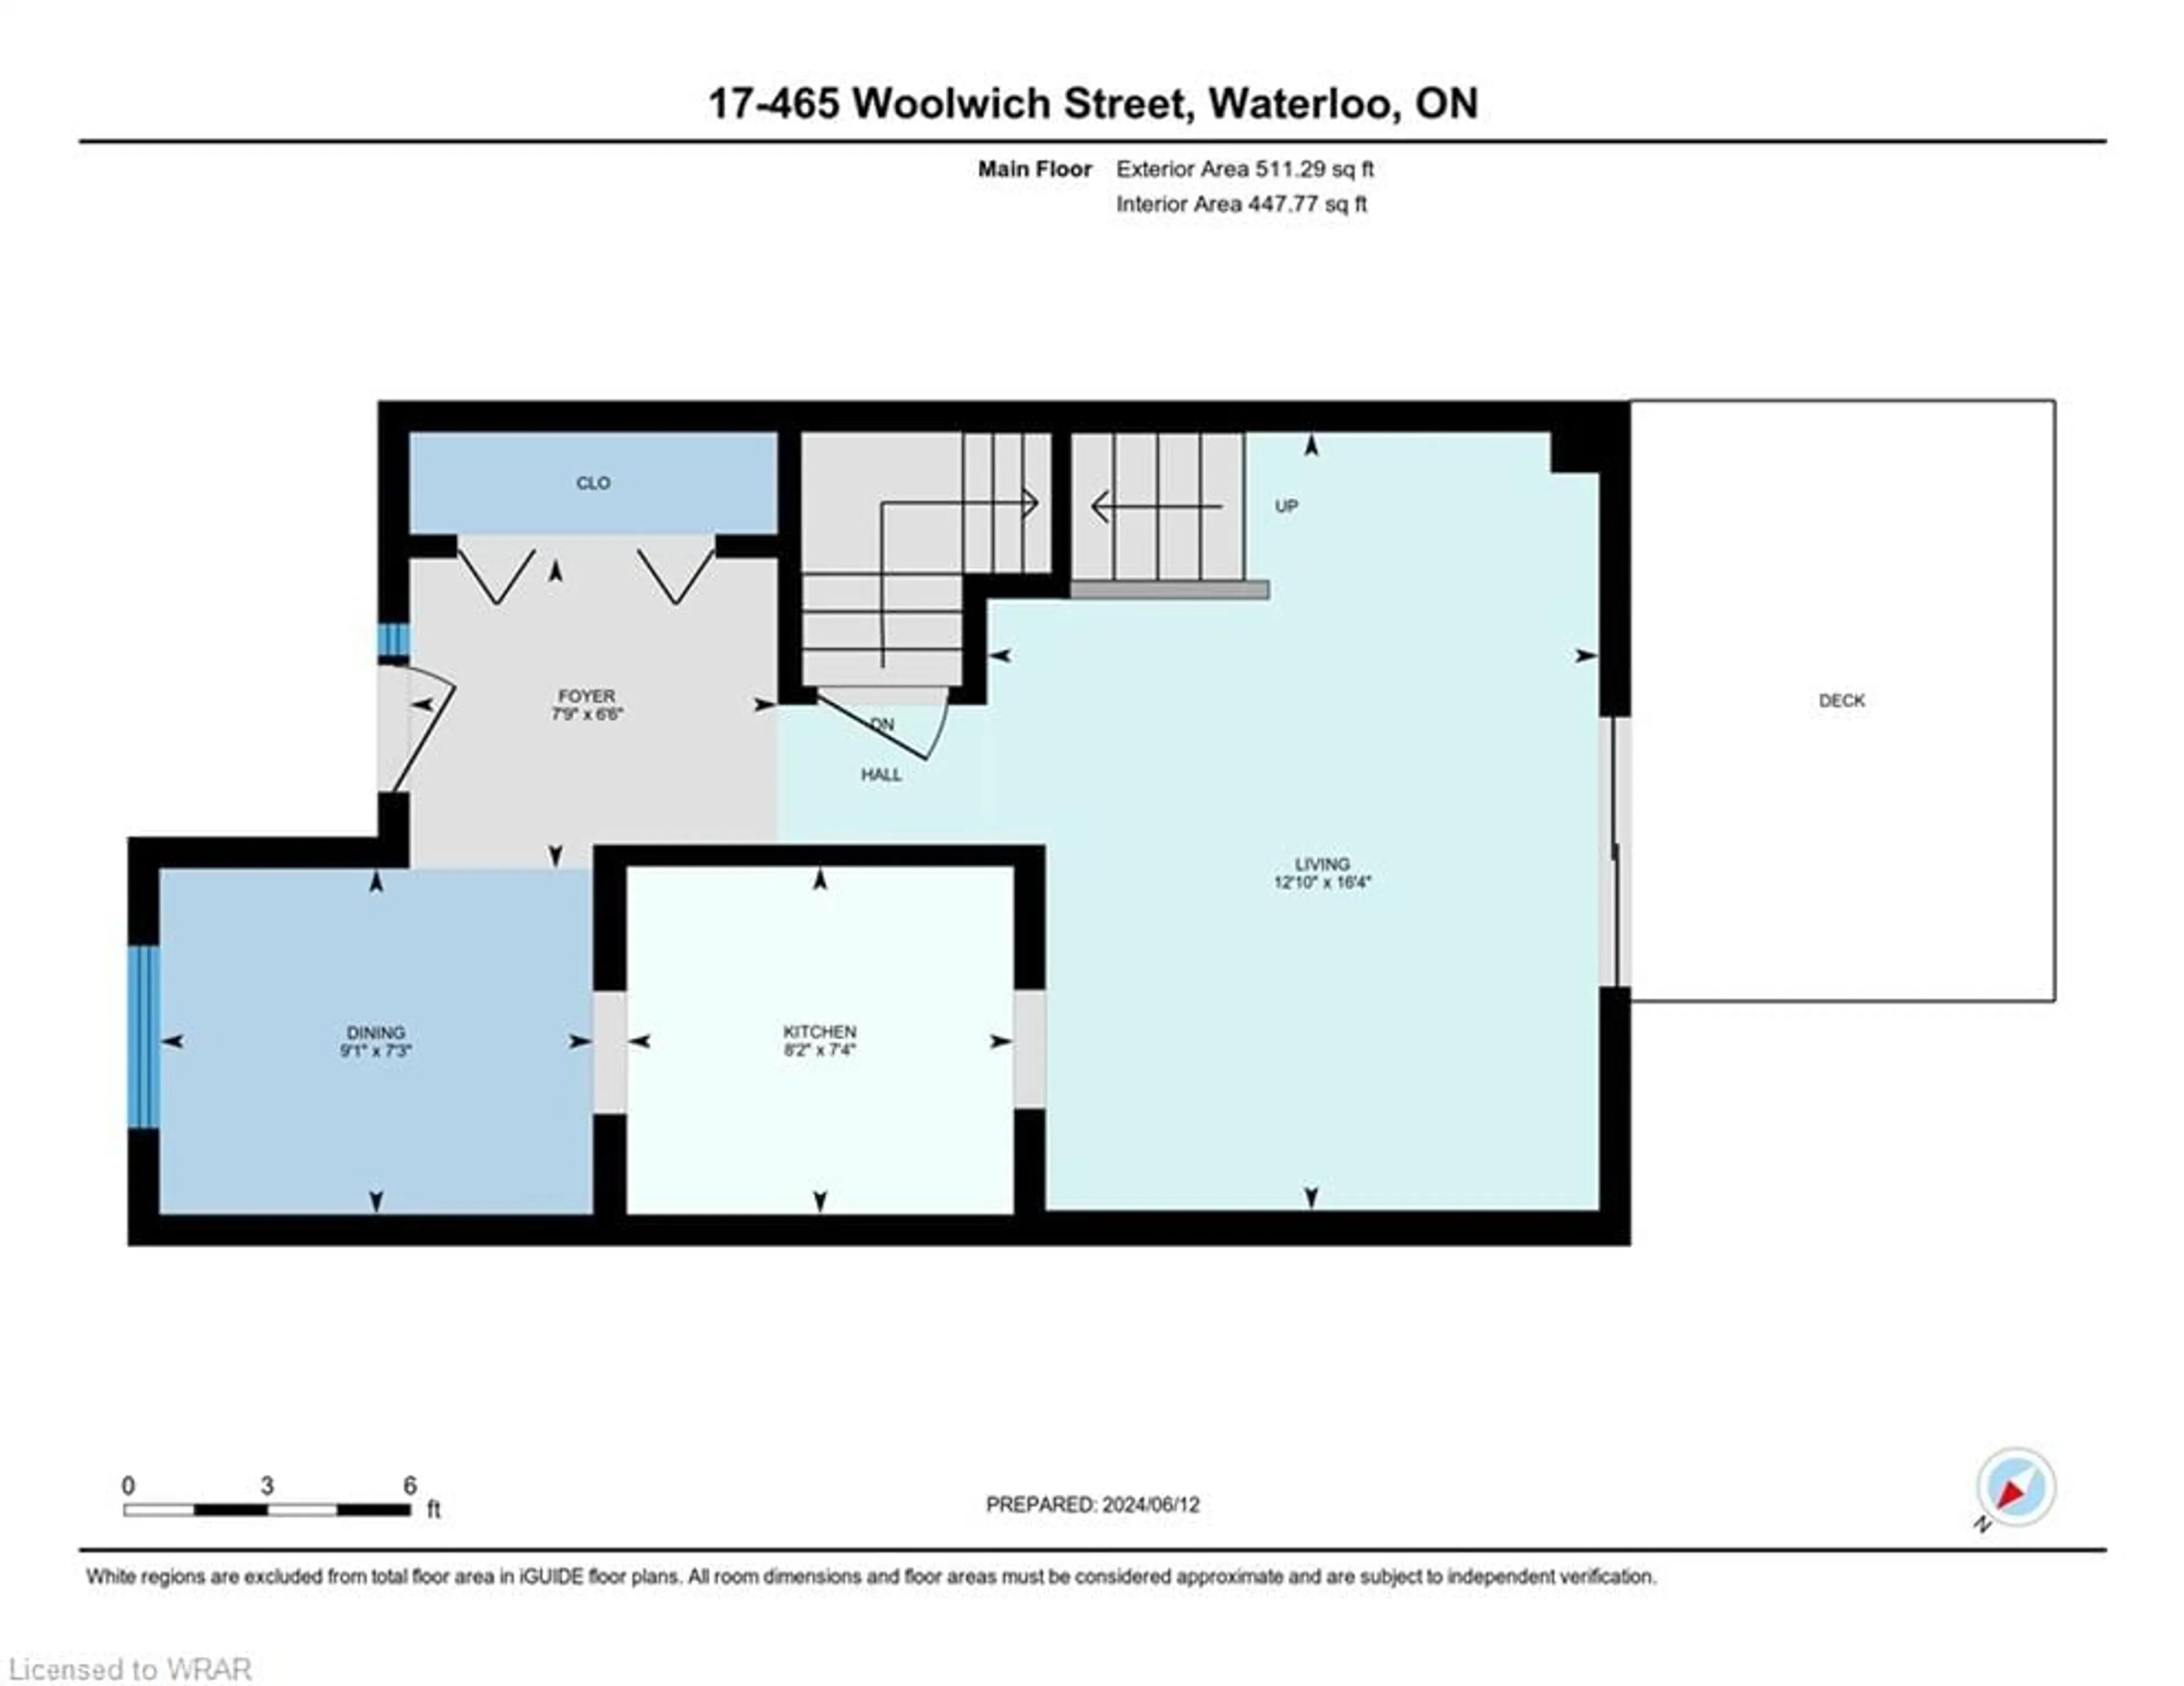 Floor plan for 465 Woolwich St #17, Waterloo Ontario N2K 3S4